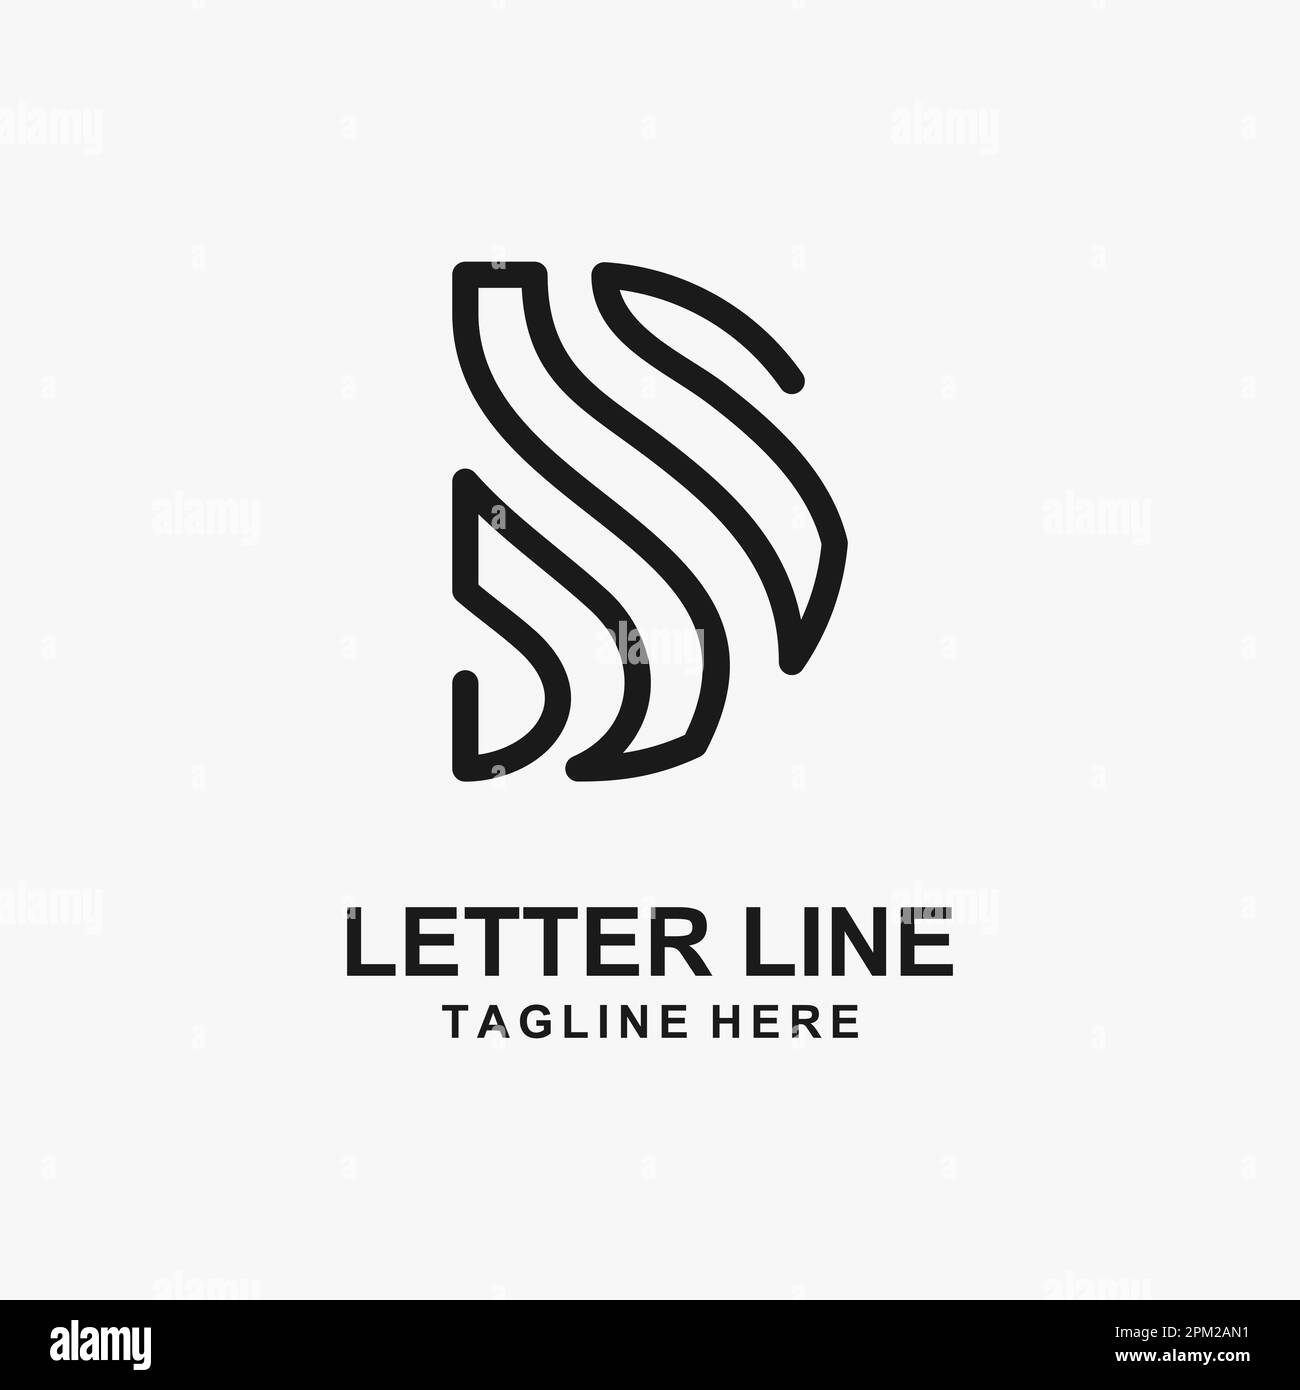 Letter D line logo design Stock Vector